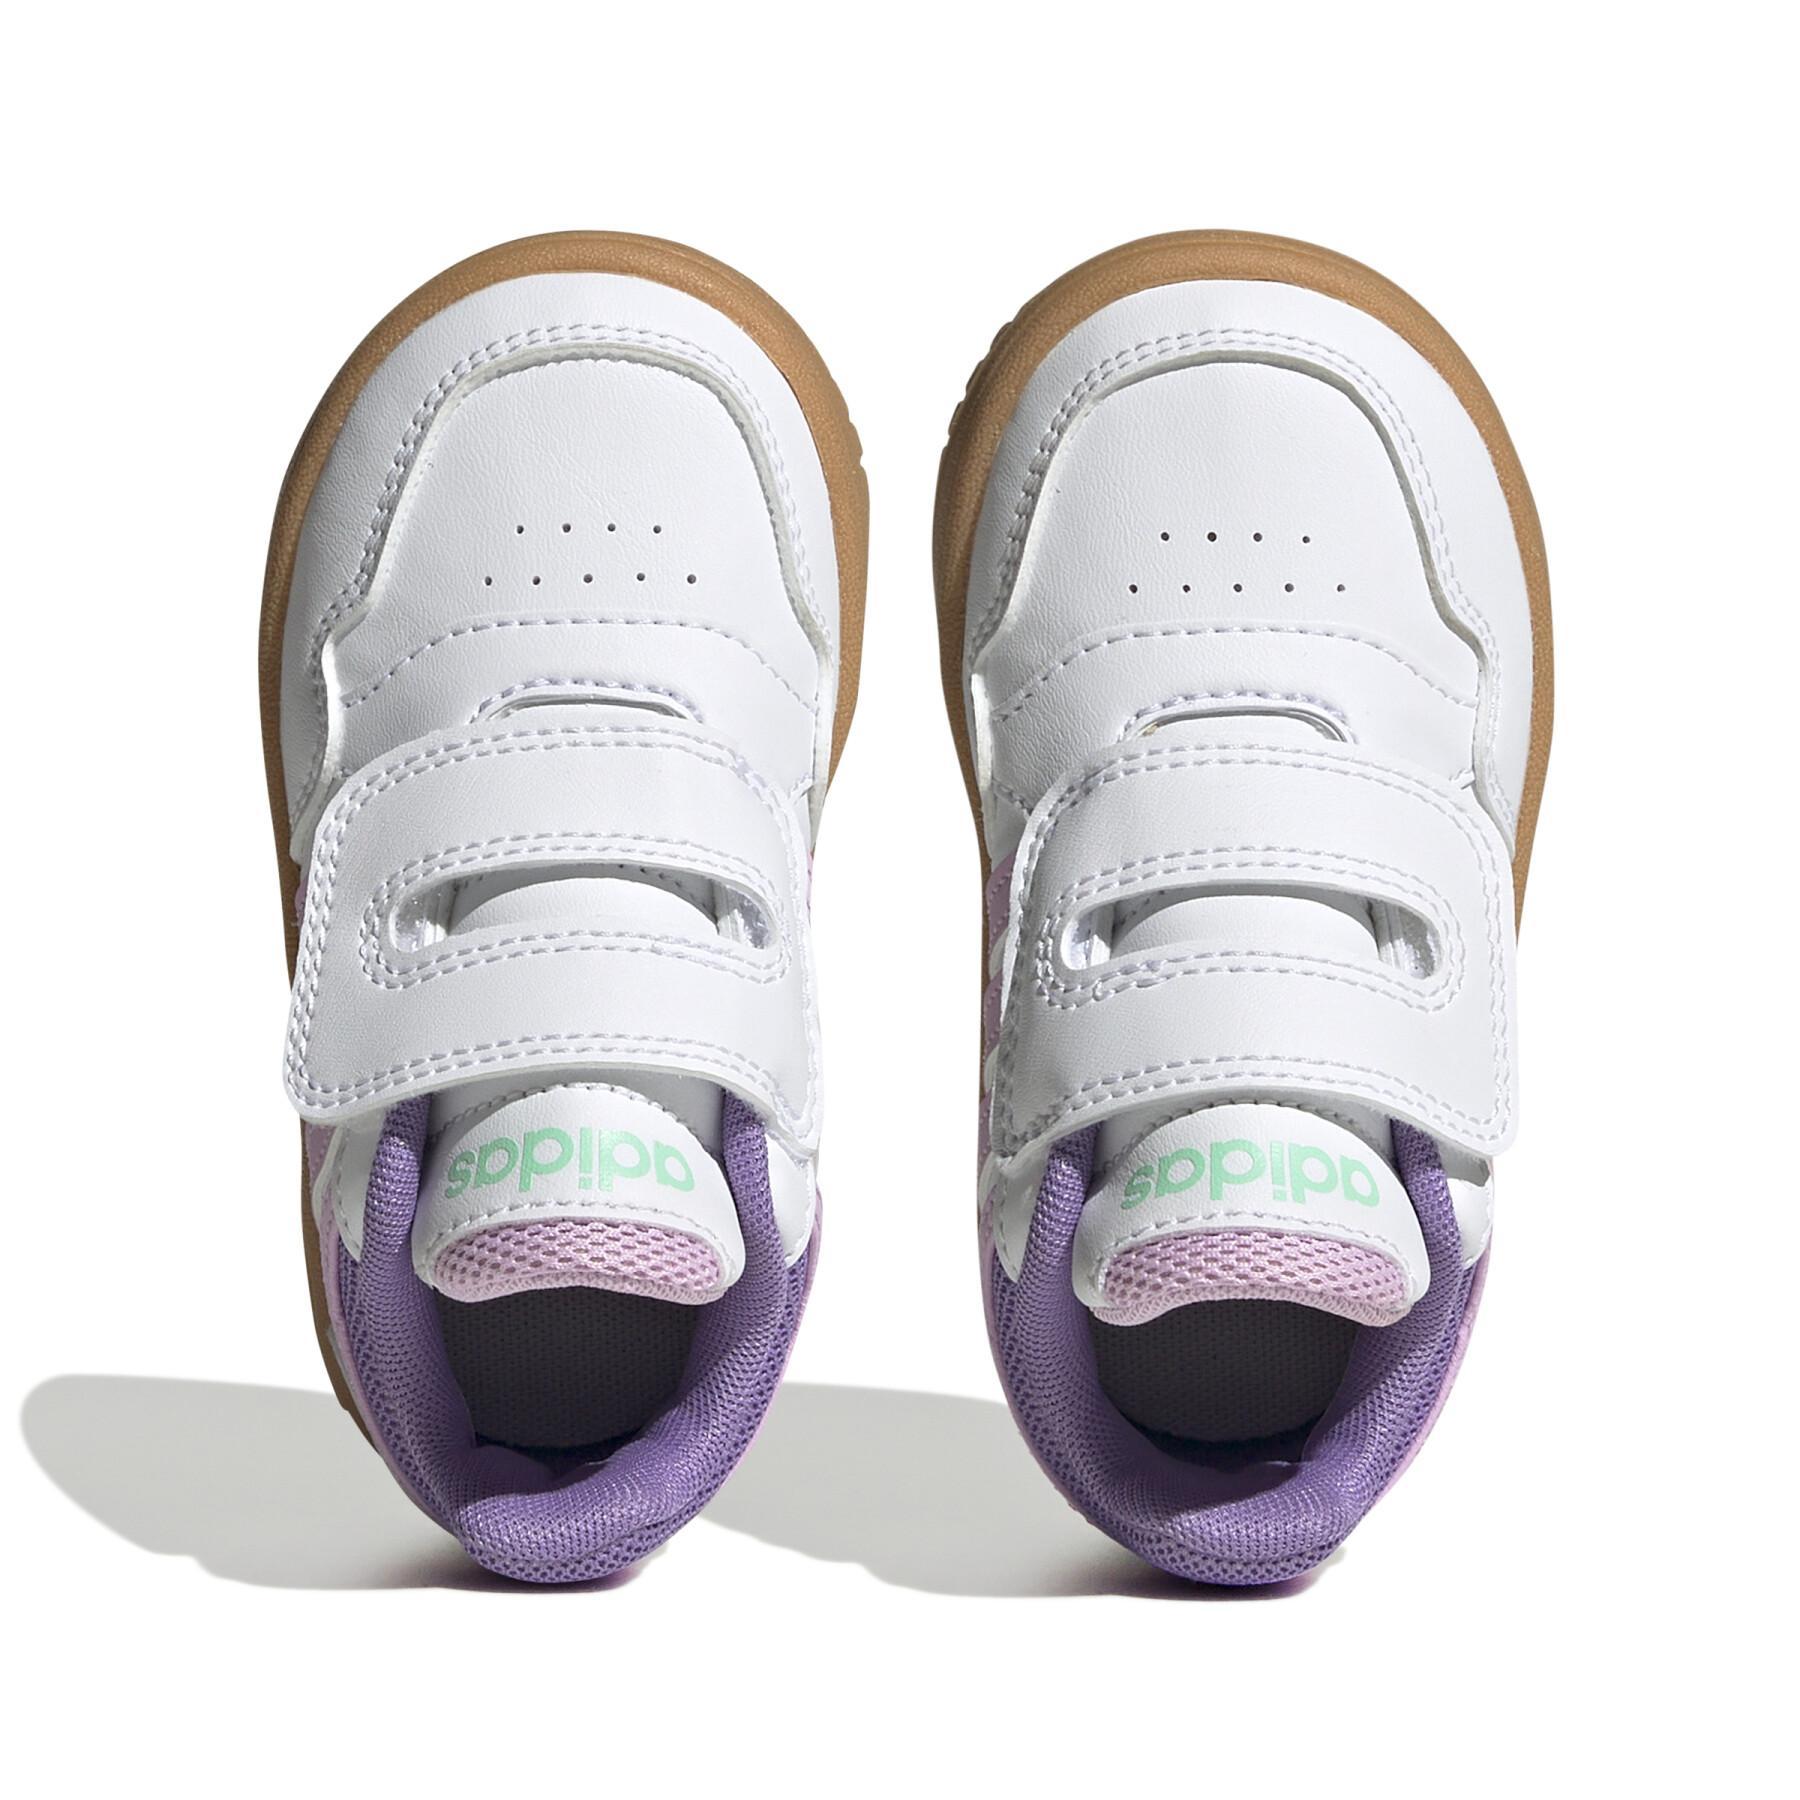 Baby sneakers adidas Hoops